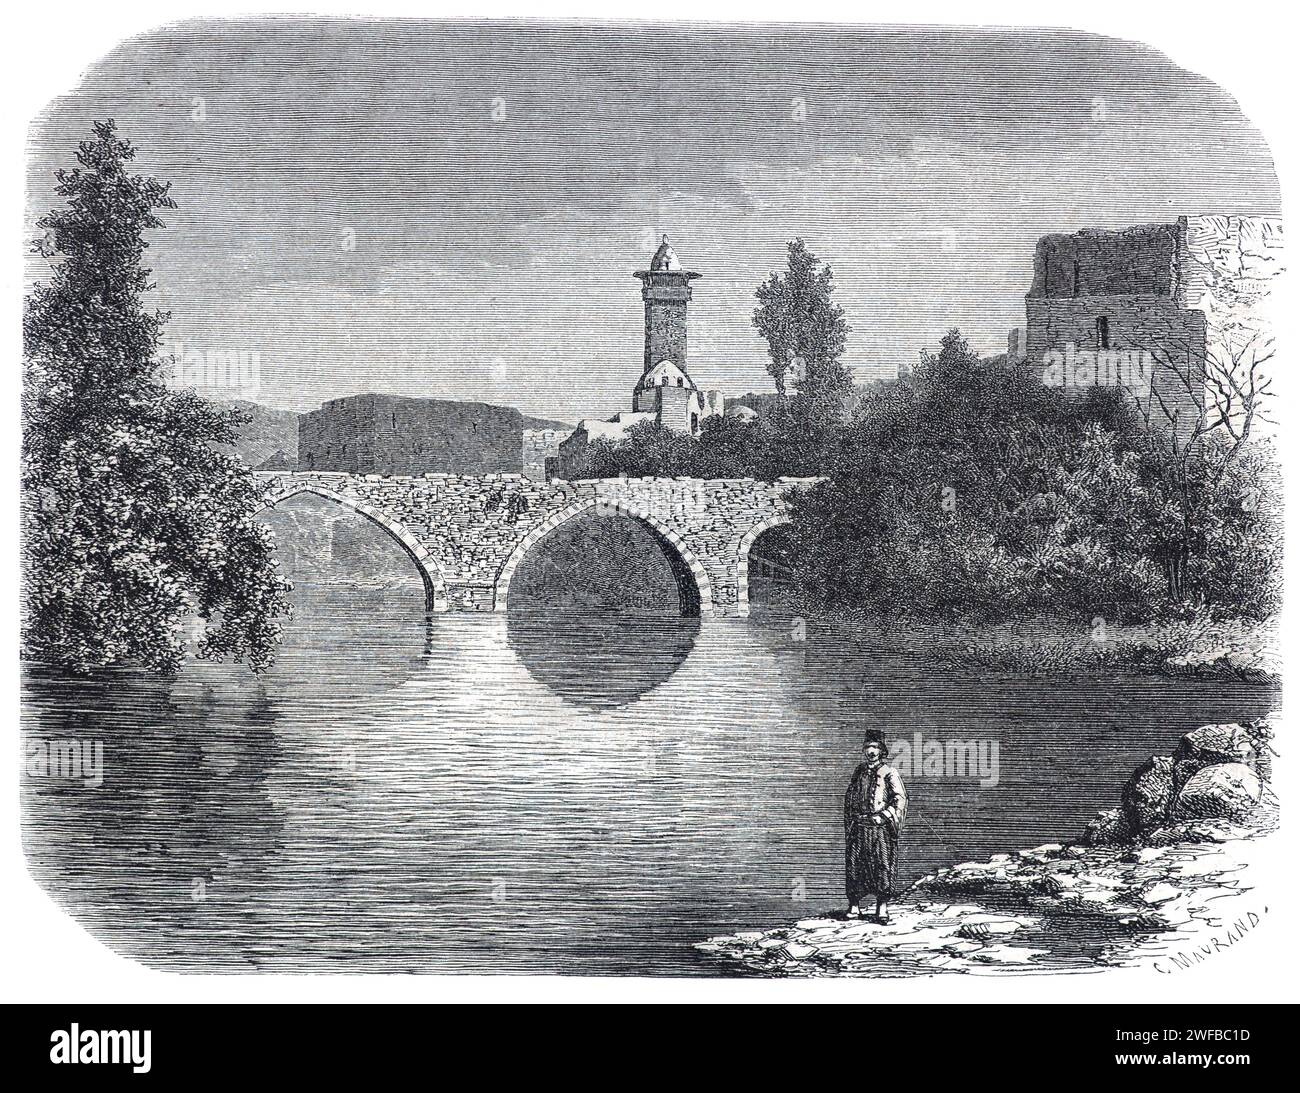 Pont historique sur la rivière Orontes à Hama Syrie. Gravure vintage ou historique ou Illustration 1863 Banque D'Images